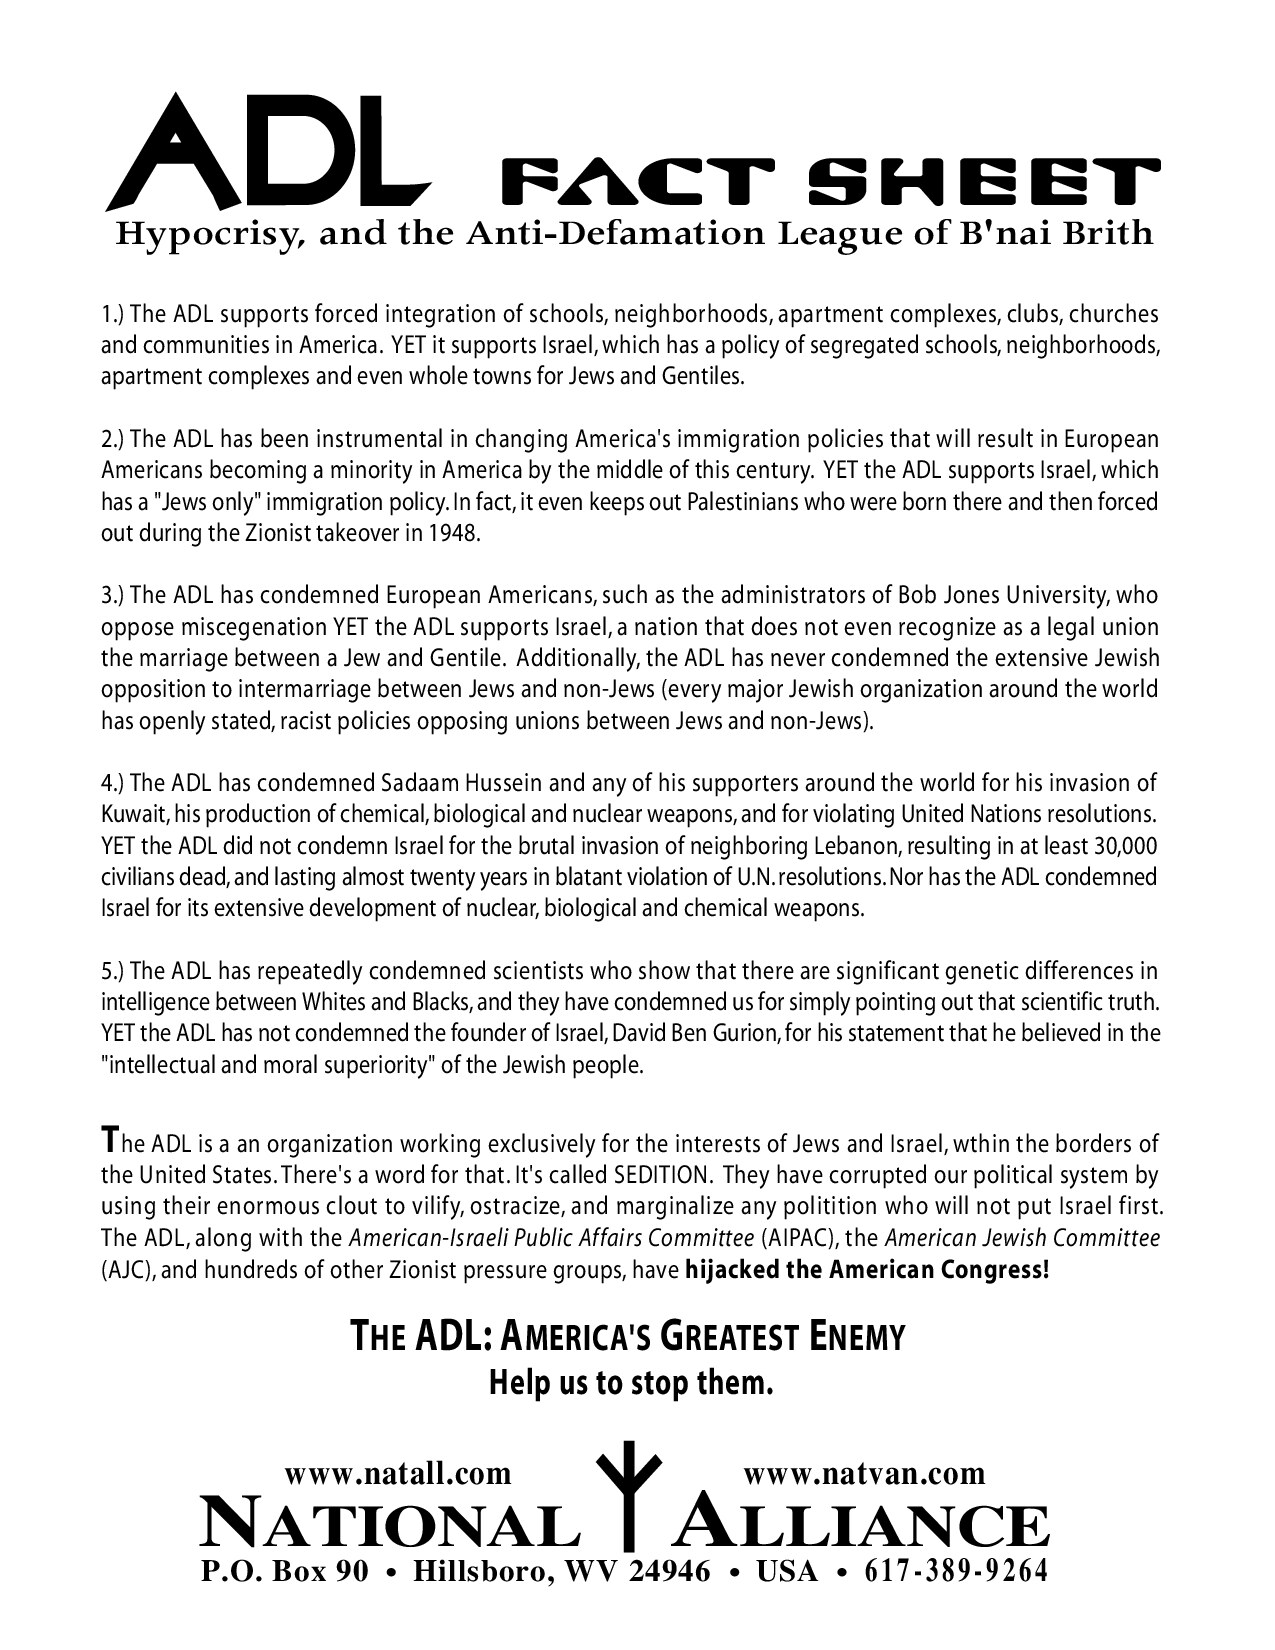 National Alliance; ADL Fact Sheet